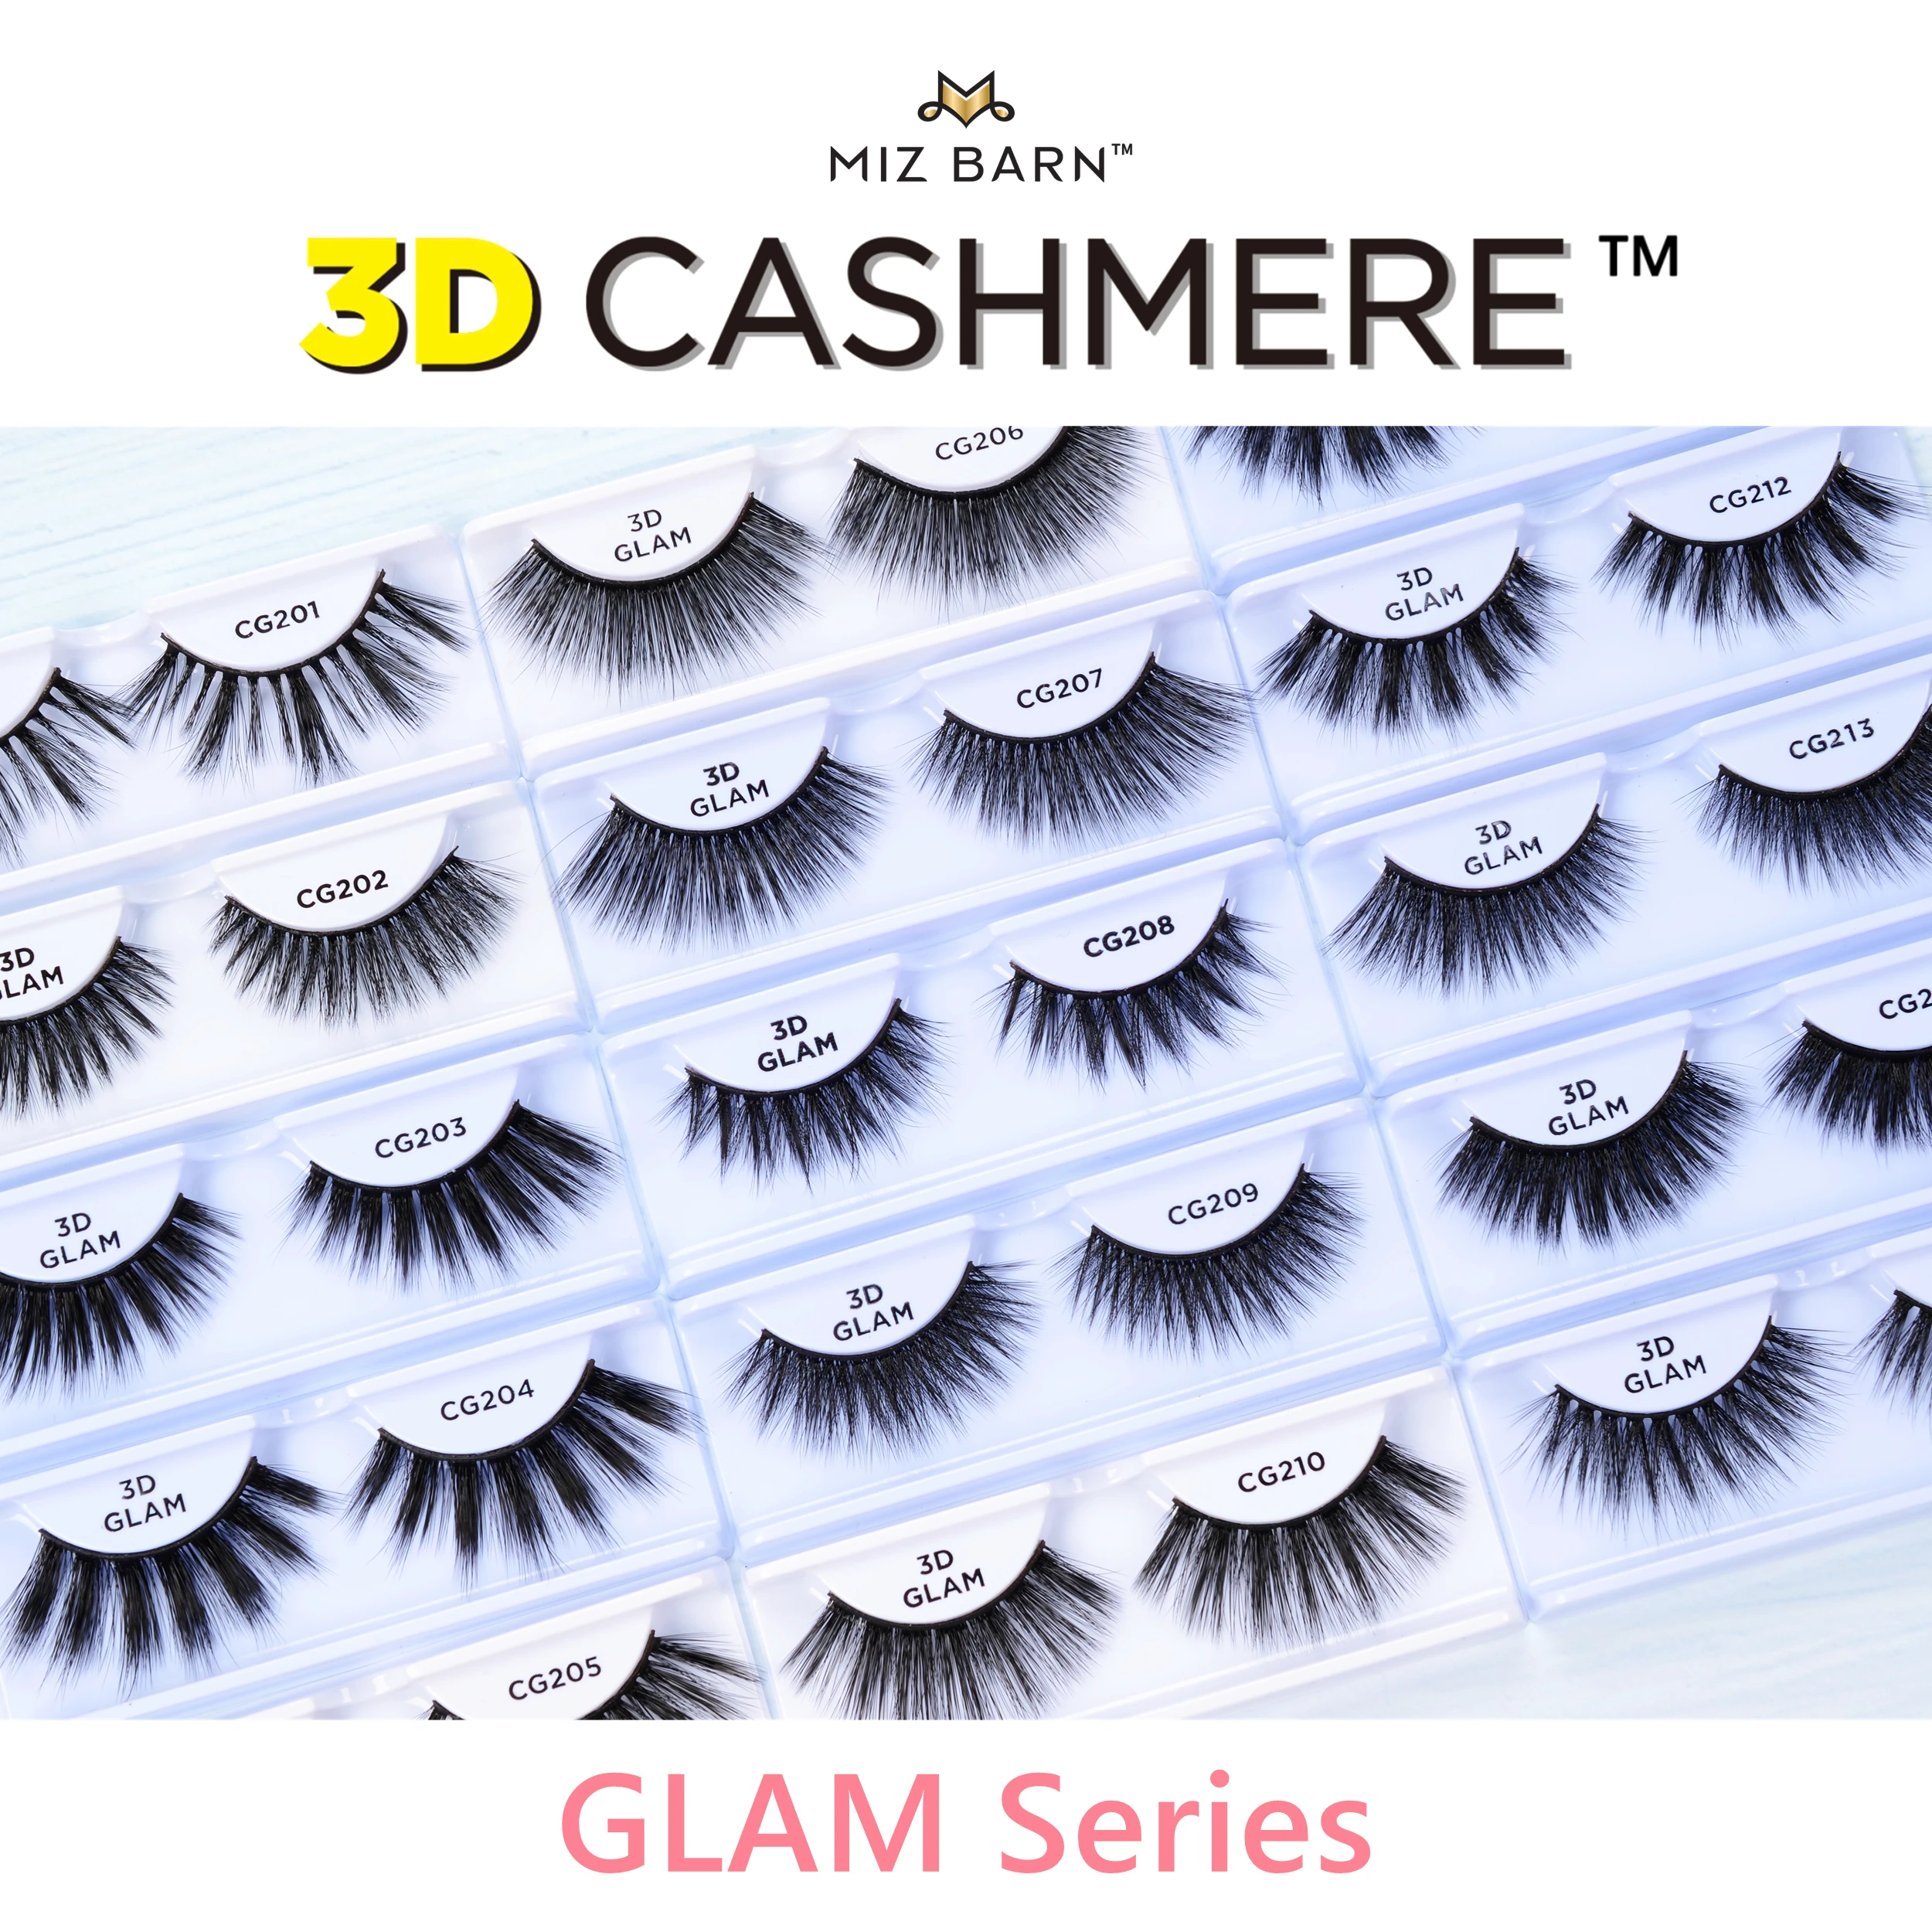 

MIZ BARN 3D CASHMERE-GLAM Eyes Lashes Makeup Soft Eyelashes Natural False Eyelash Fluffy Long Faux Mink Lash Reusable Luxury Cil